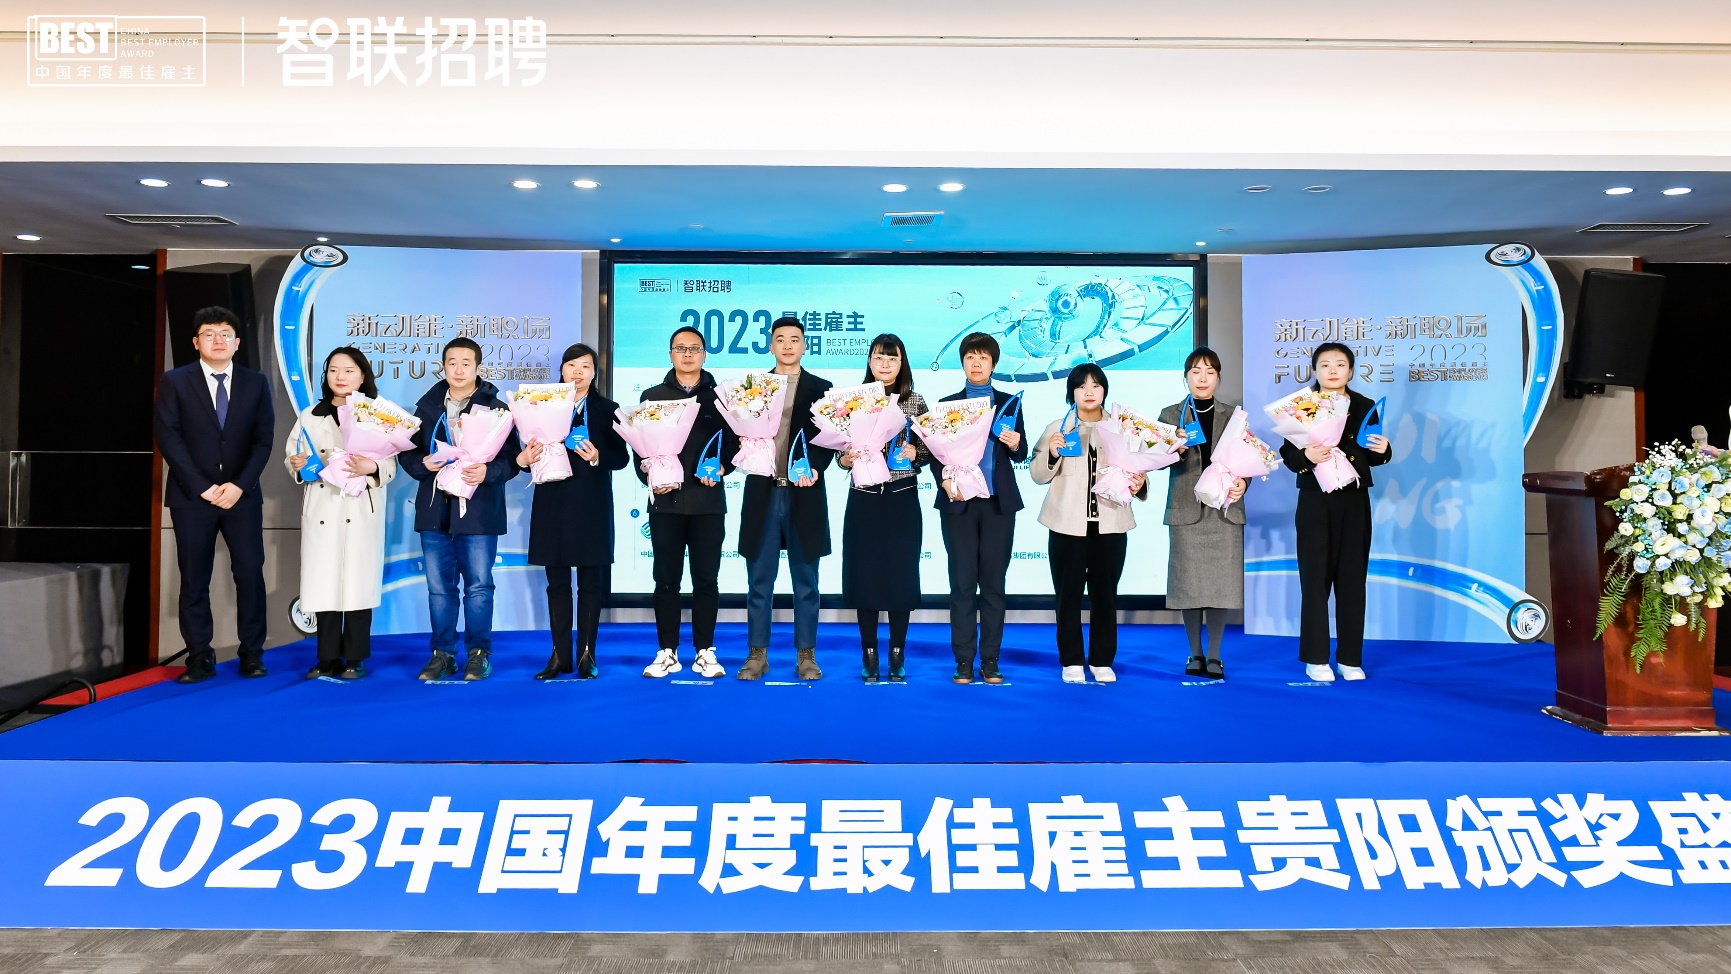 赖茅酒公司荣获“2023中国年度 最佳雇主贵阳十强“奖项